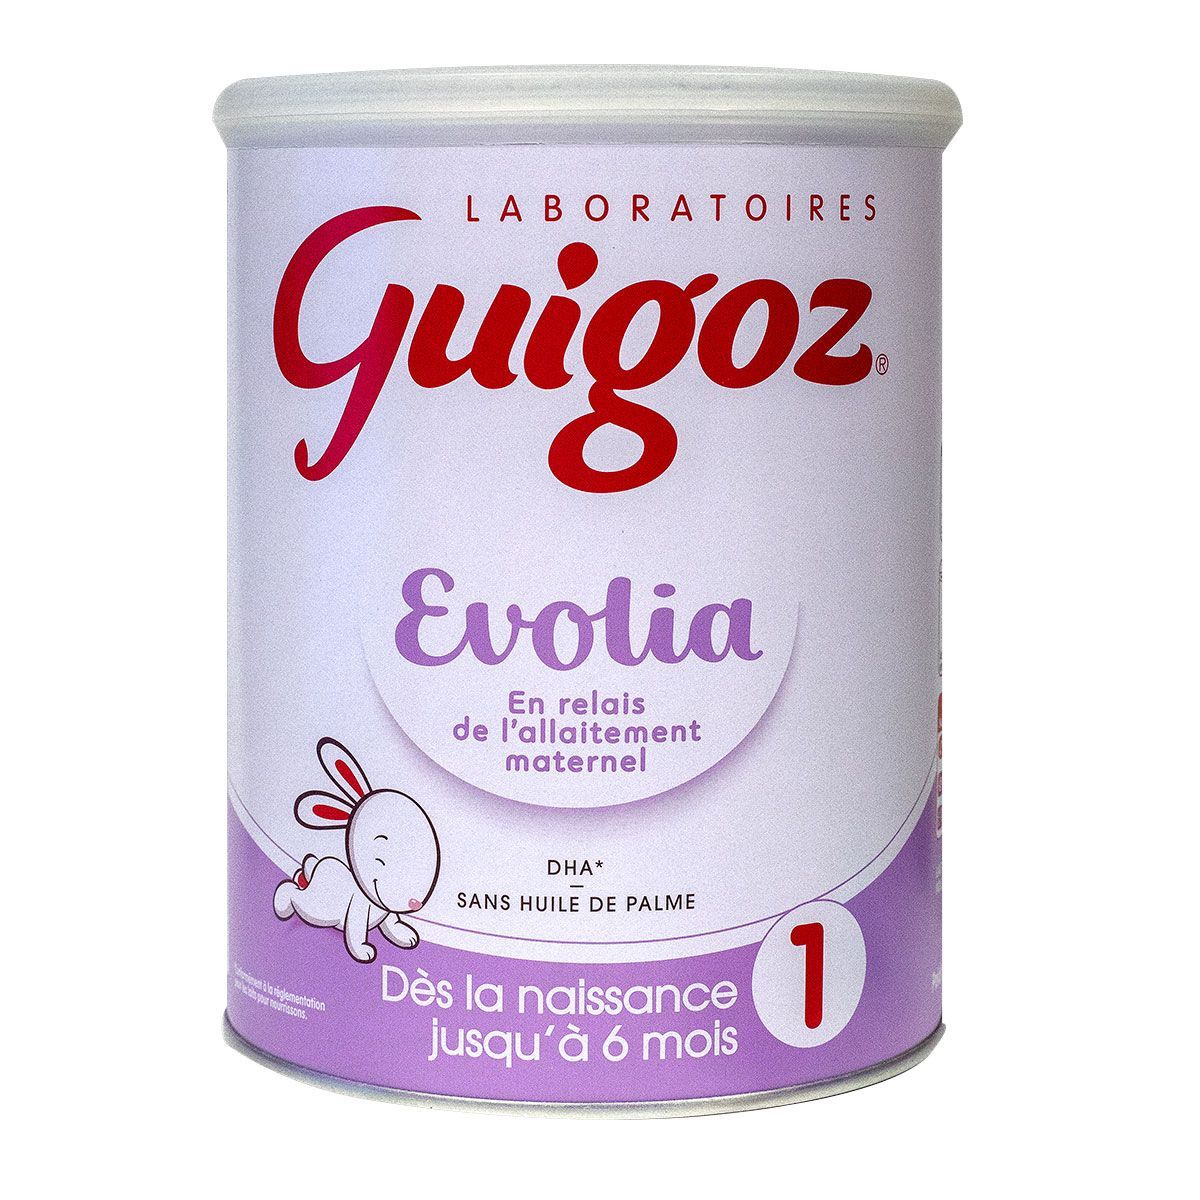 Evolia Lait 1er âge jusqu'à 6 mois Guigoz - lait en poudre de la